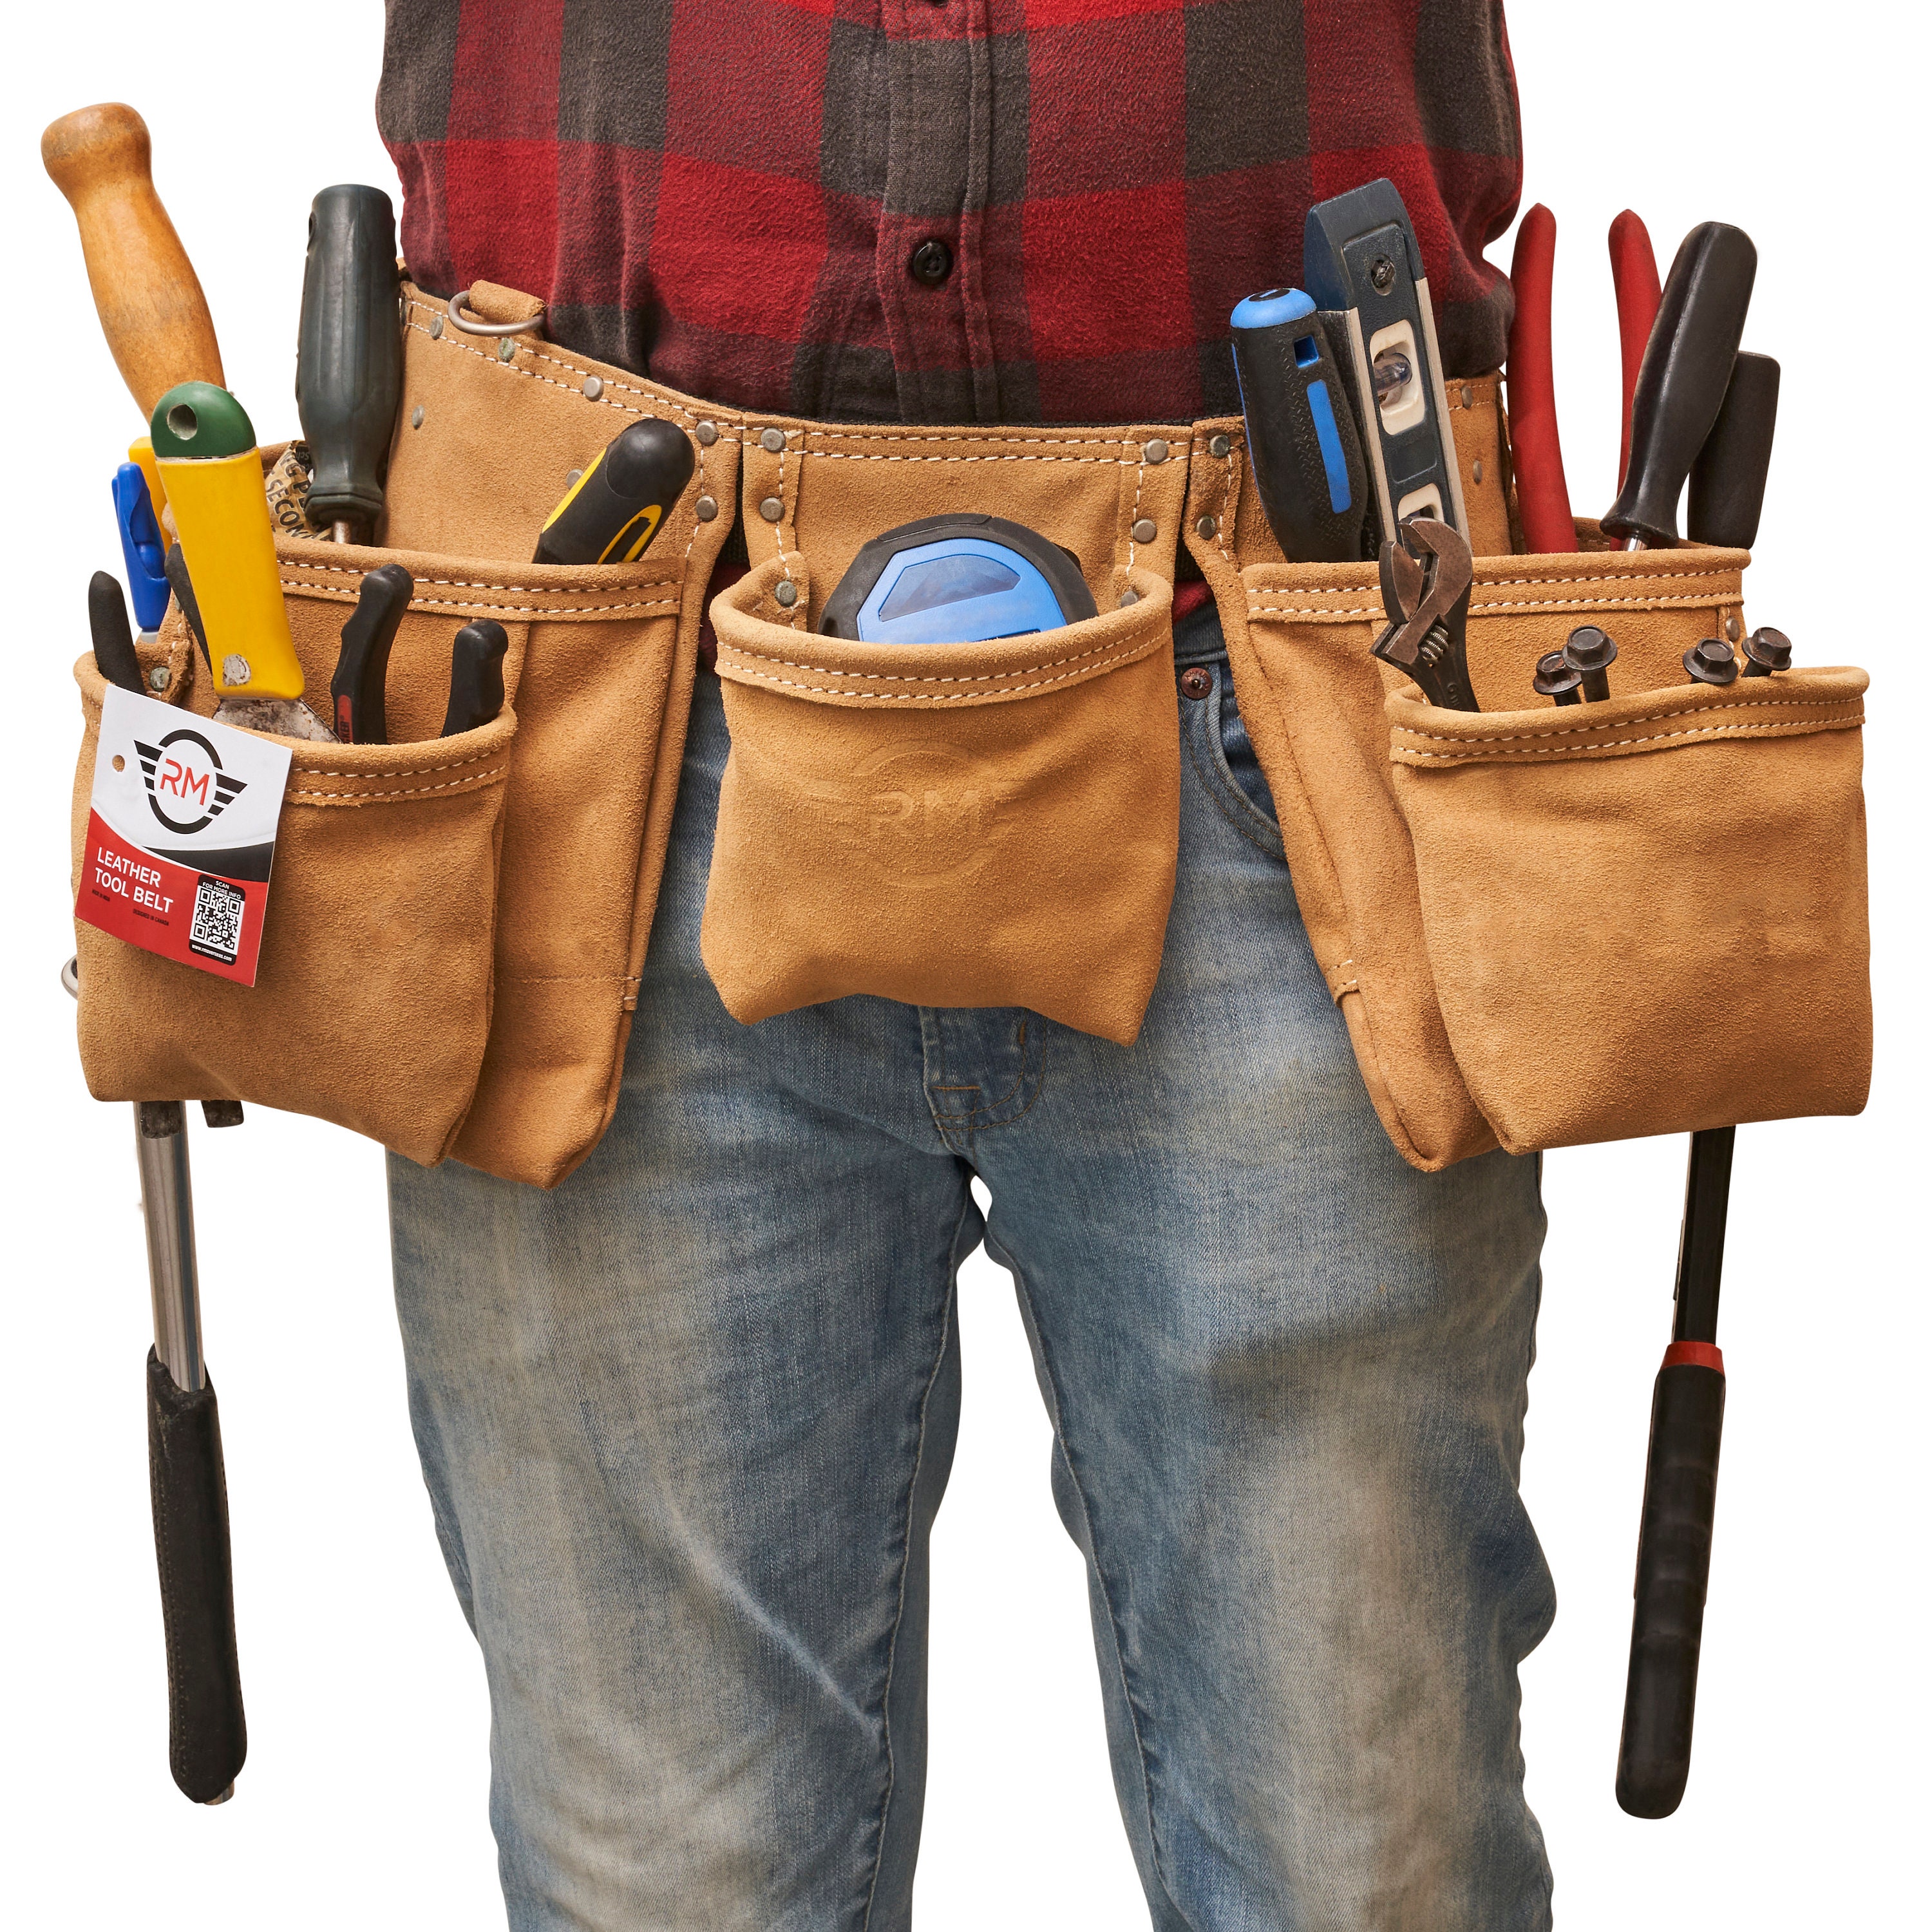 Essentials for a Carpenter's Tool Belt - Fine Homebuilding